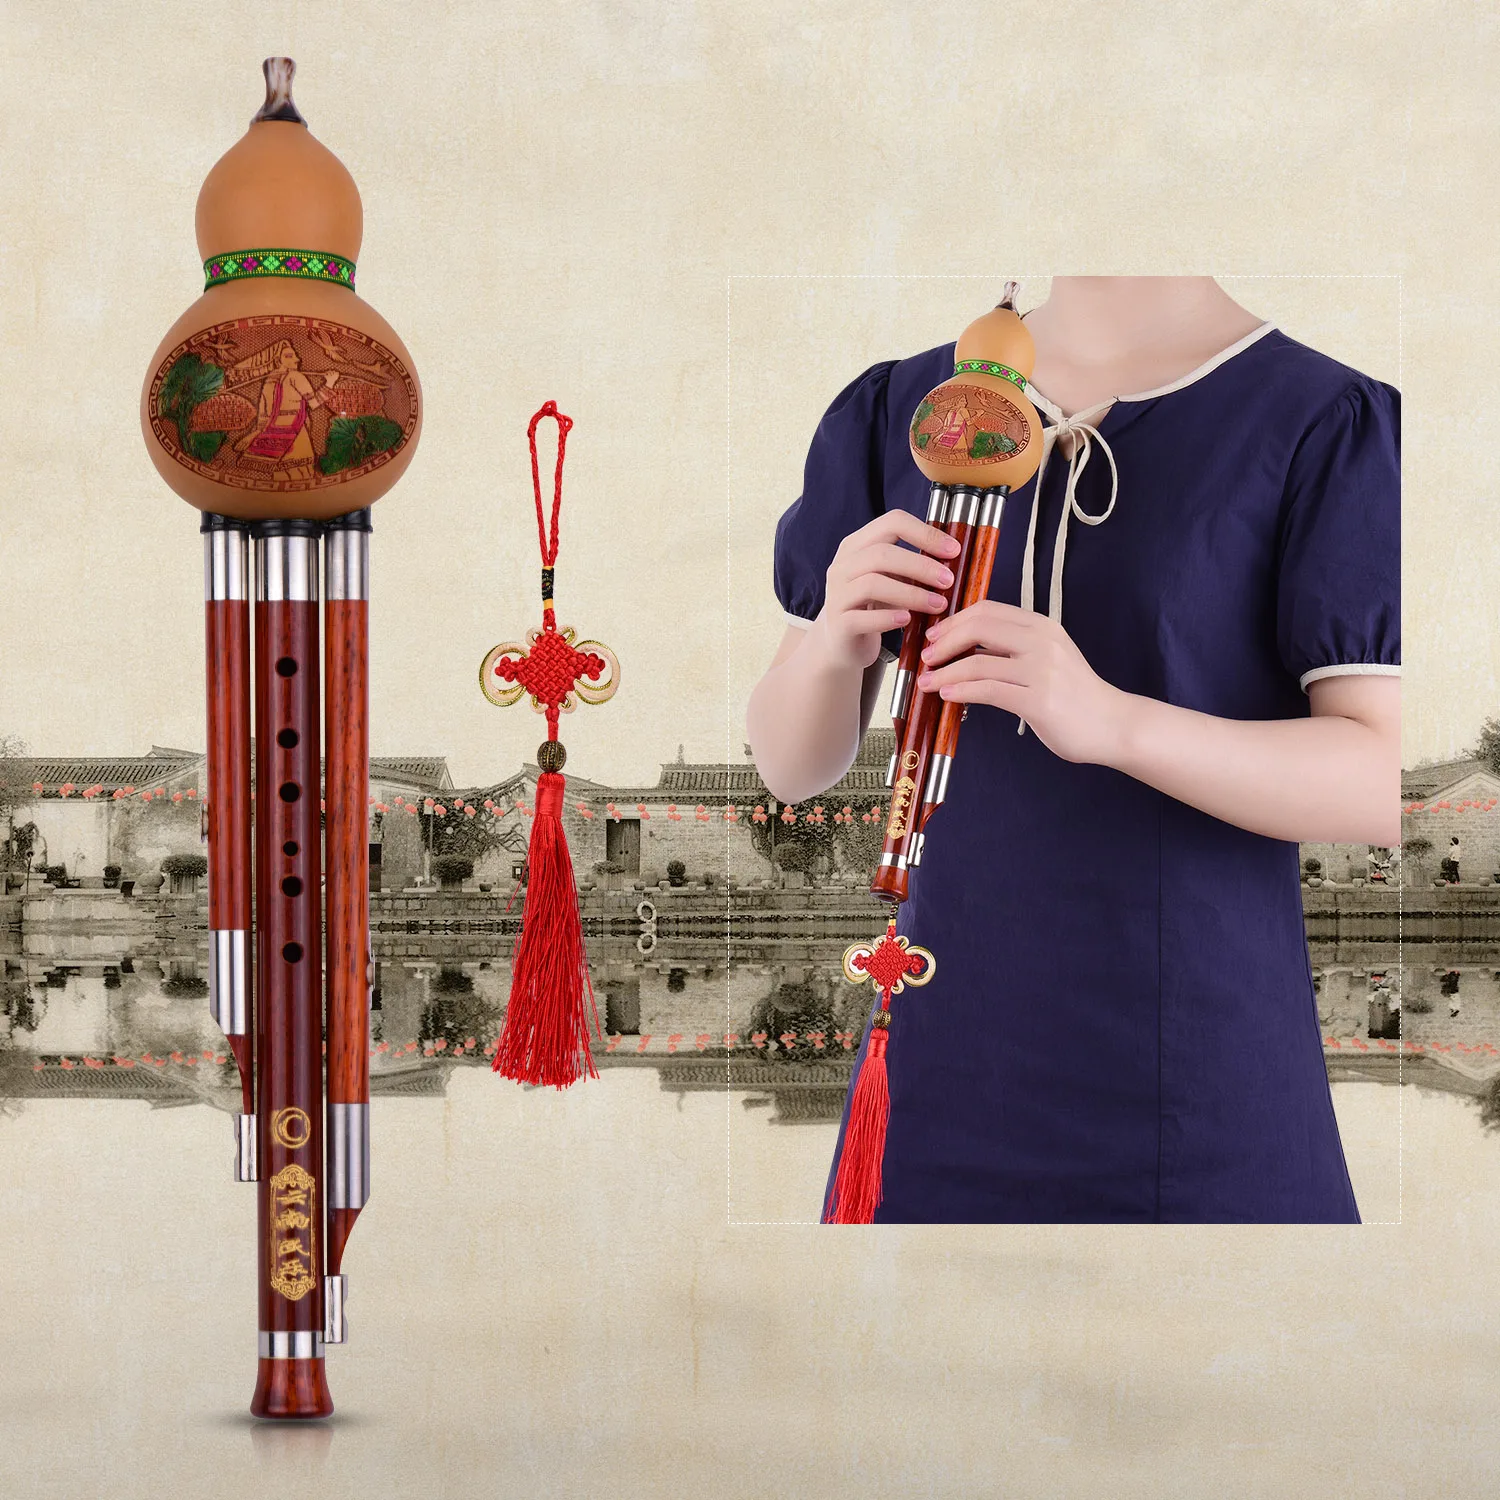 

3 тона C-Key Hulusi Тыква Cucurbit Flute твердые деревянные трубы Китайский традиционный инструмент с китайским узлом чехол для переноски